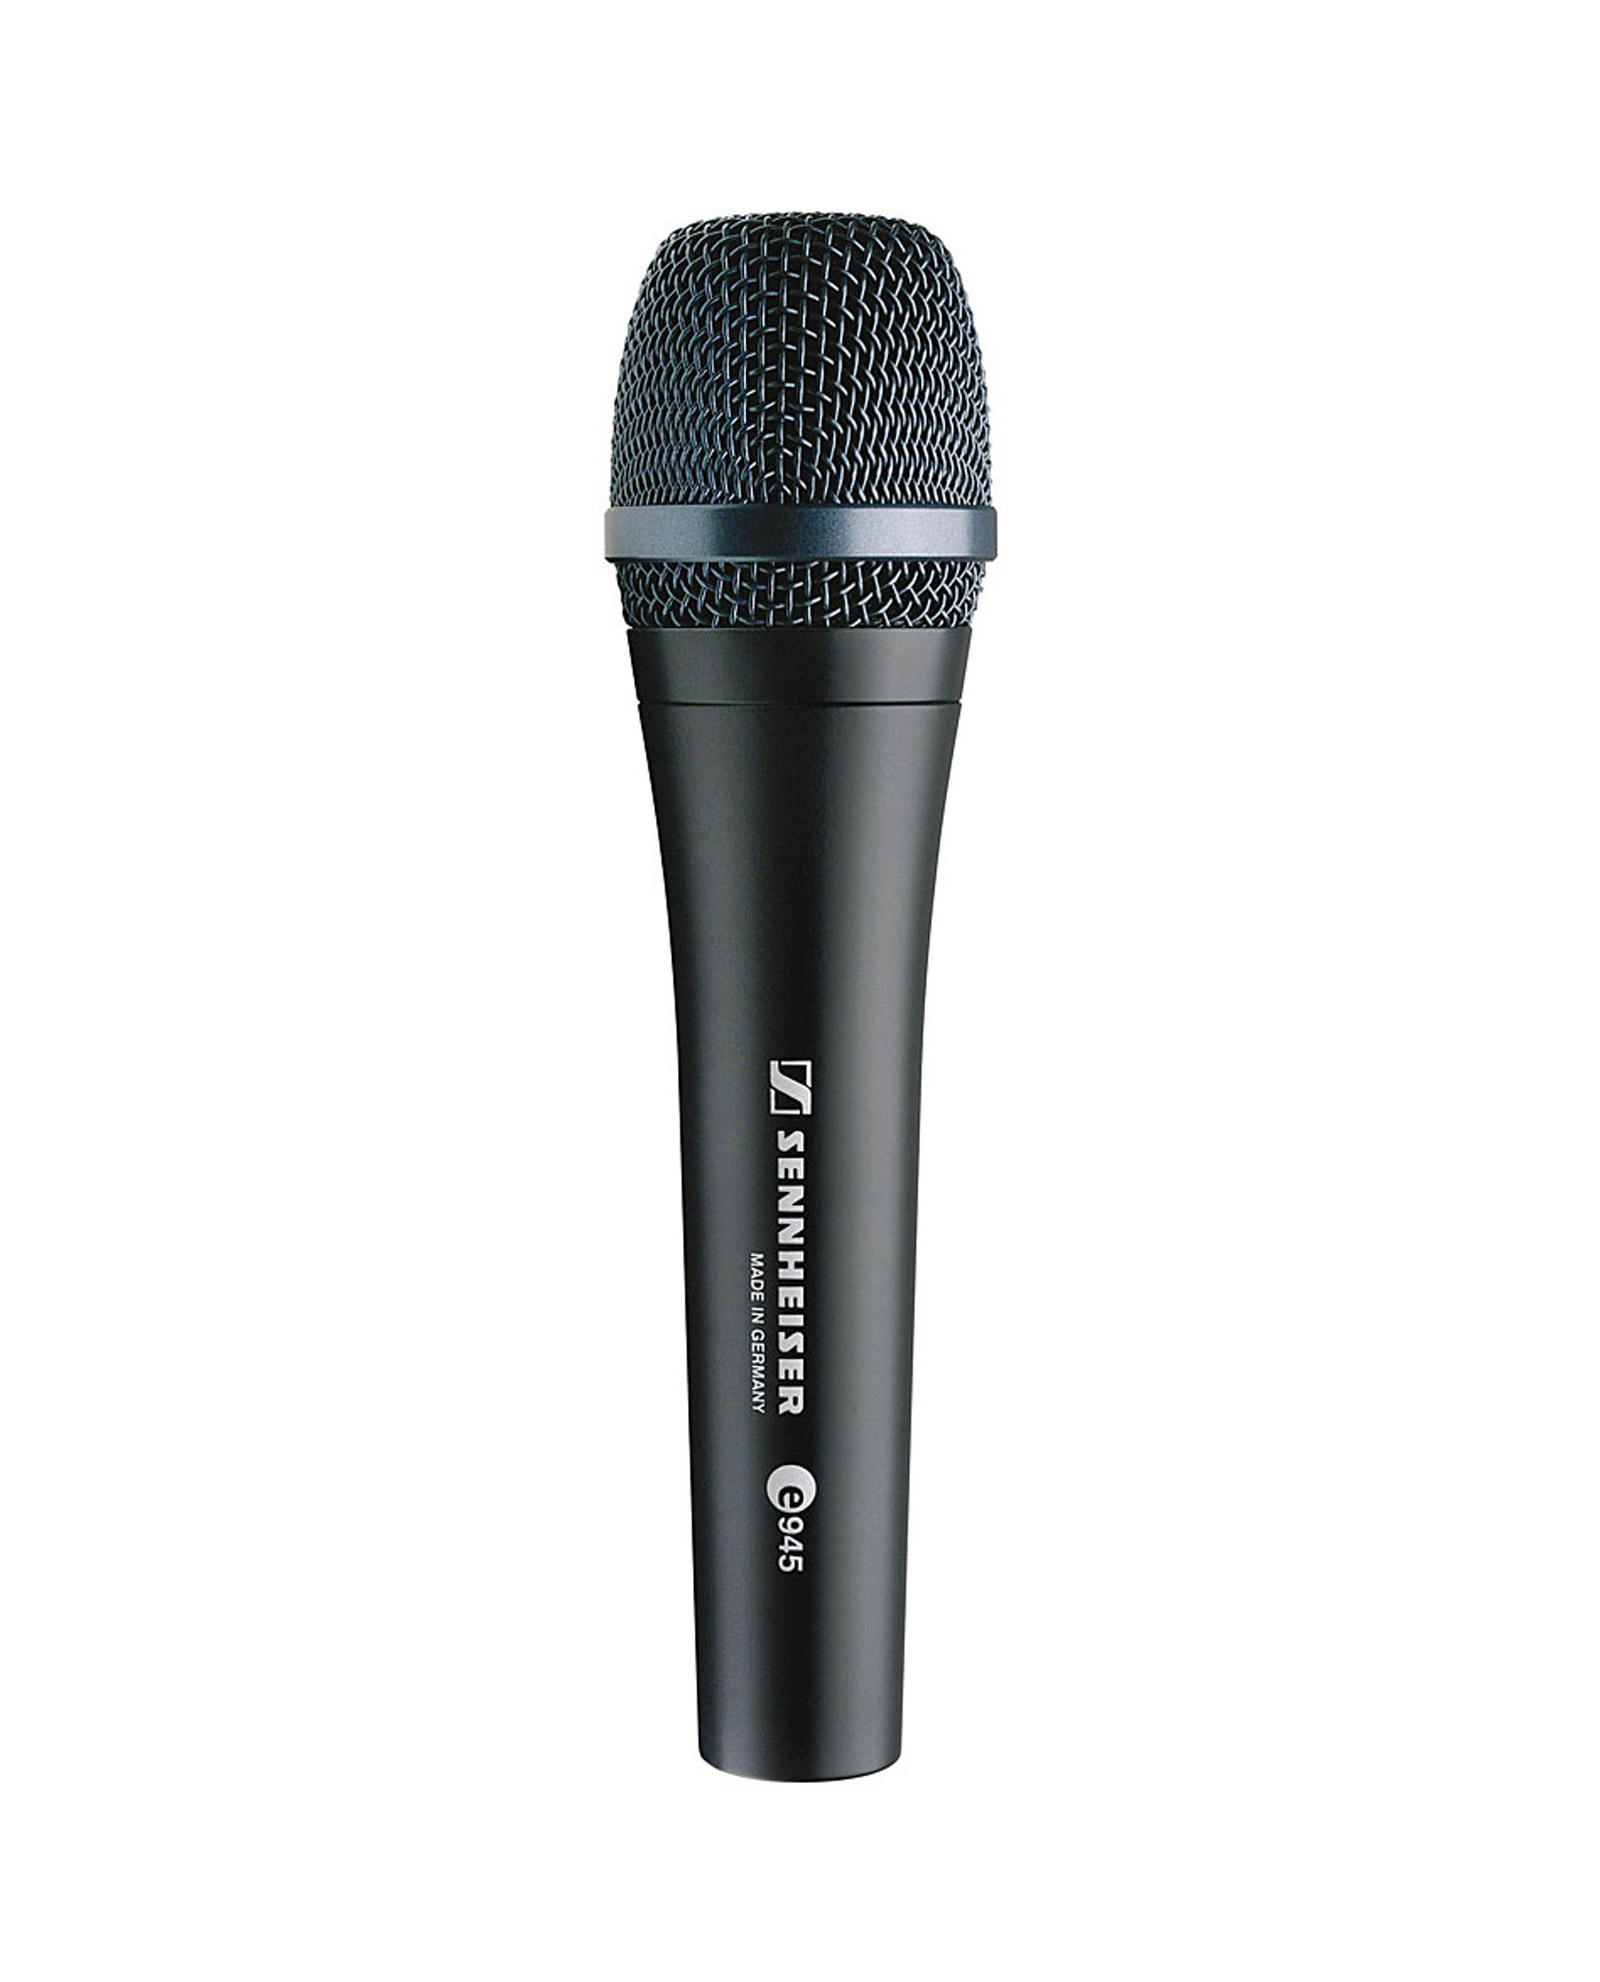 Sennheiser E945 Microphone